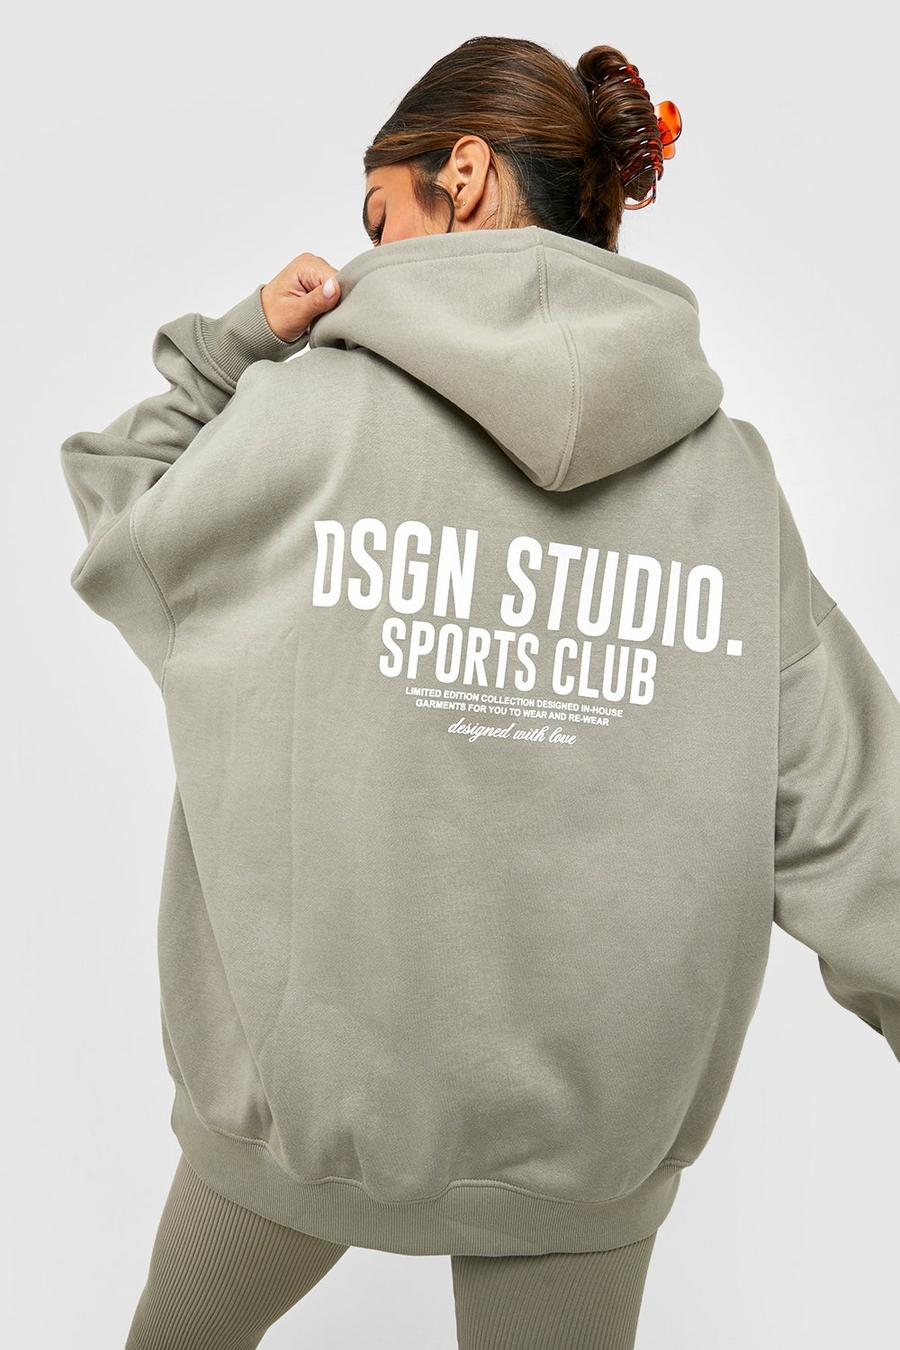 Felpa oversize con slogan Dsgn Studio Sports Club e cappuccio, Washed khaki kaki